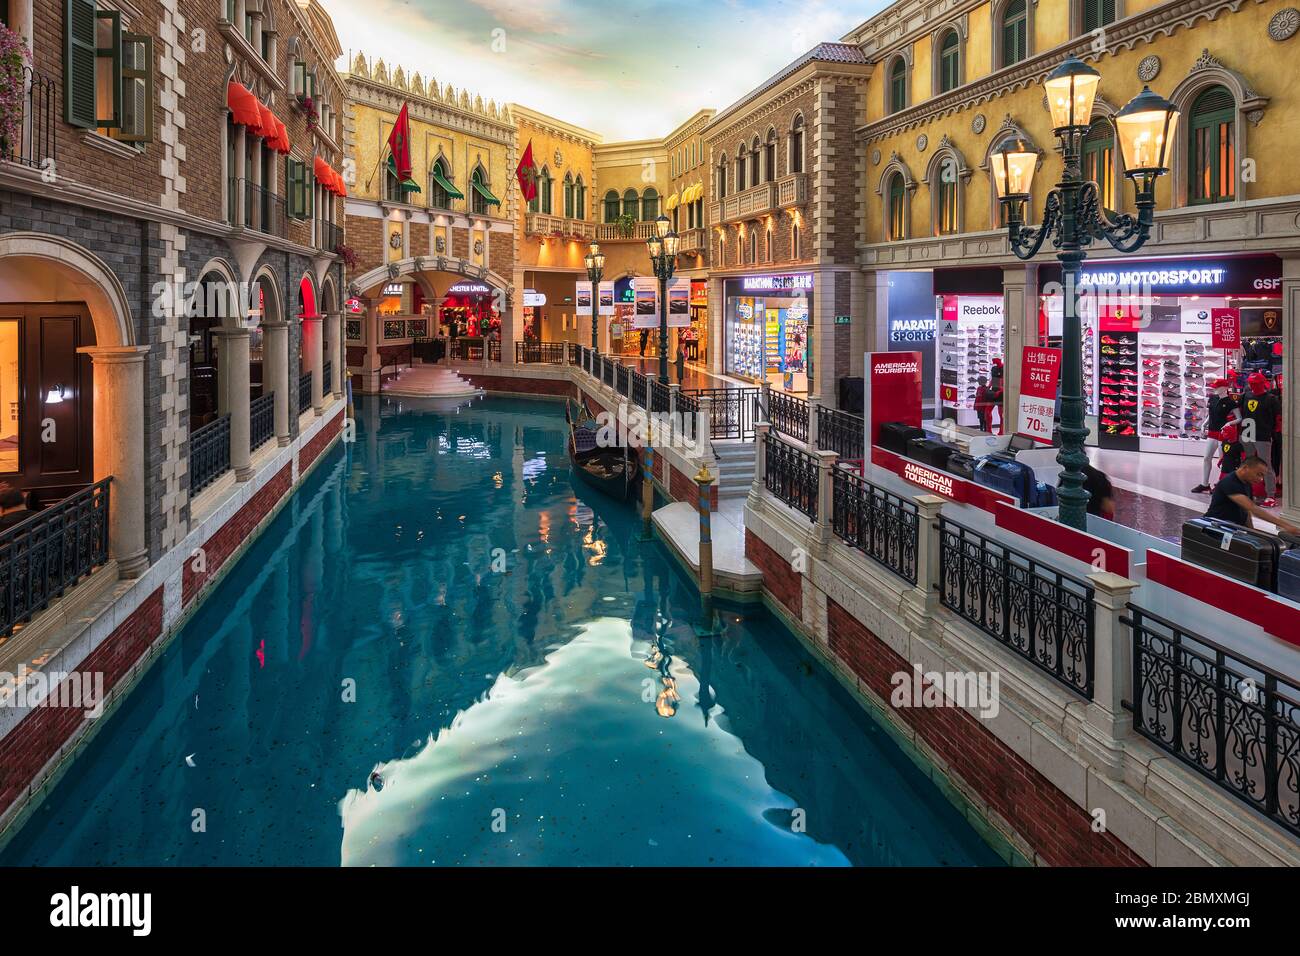 Macao, Cina - 16 Maggio 2020: Il Venetian Macao Luxury Hotel Resort è una delle migliori destinazioni al mondo per il gioco d'azzardo. Foto Stock